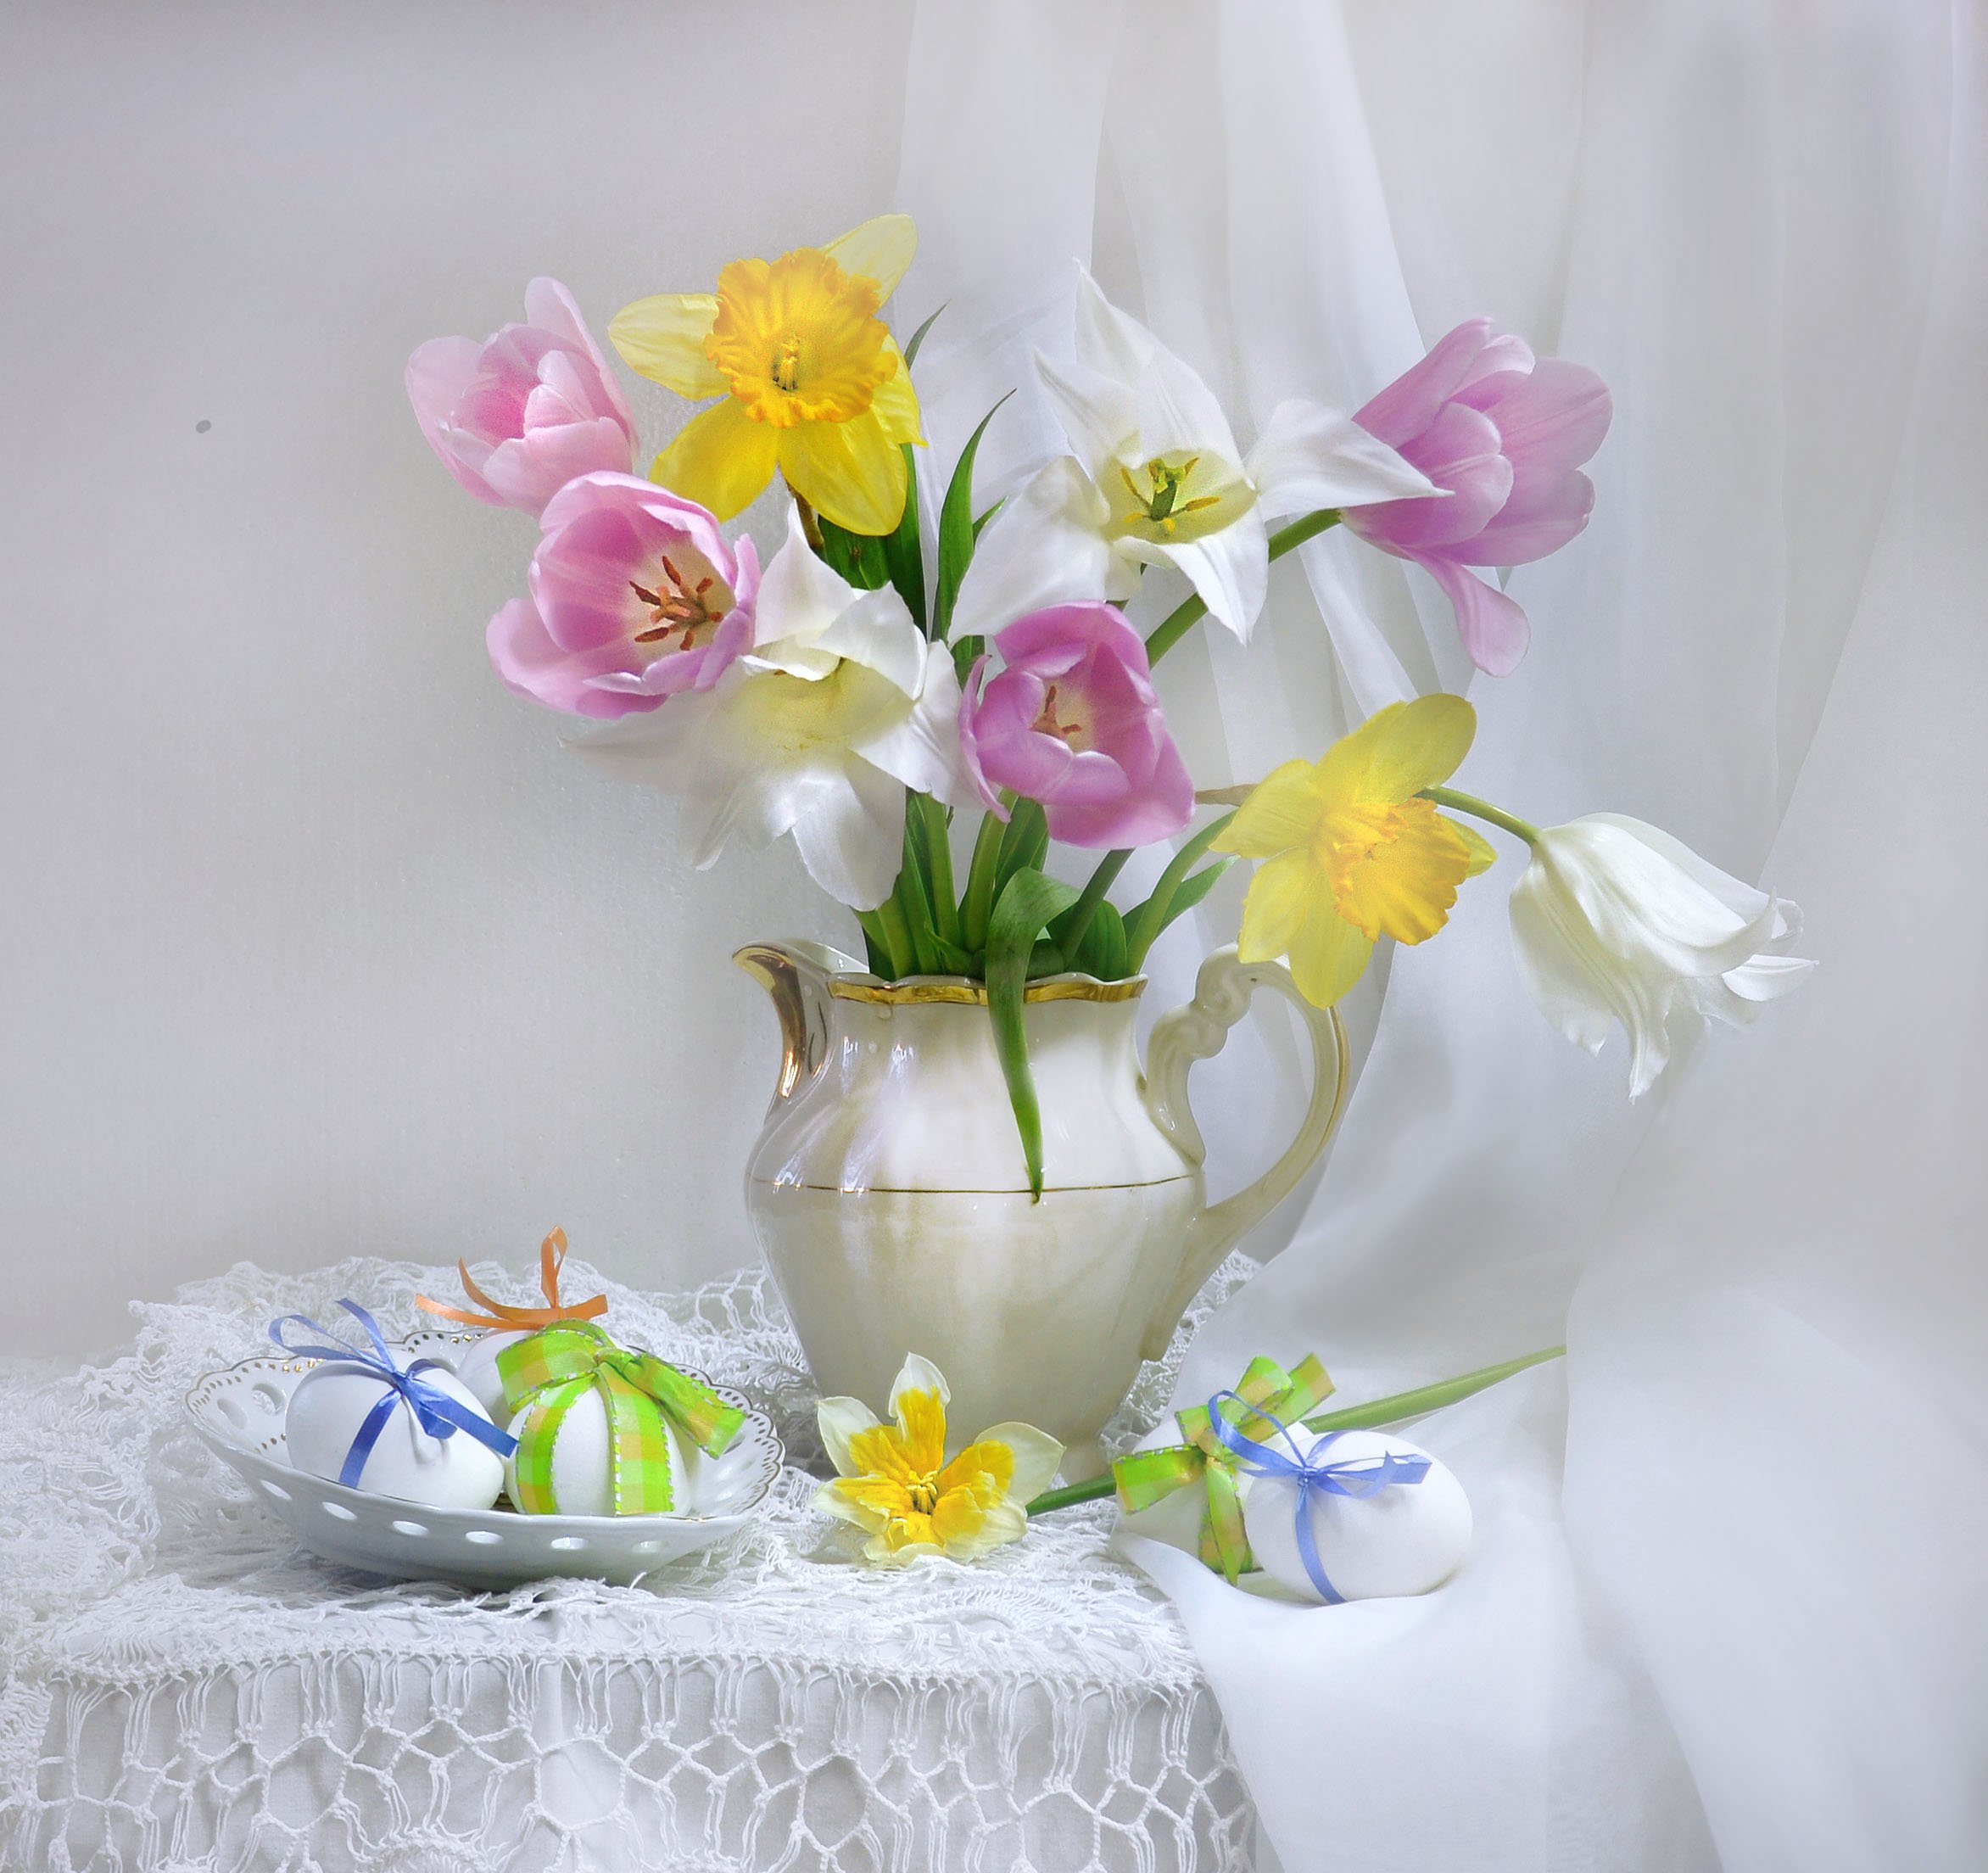 still life, натюрморт, апрель весна нарциссы пасха пасхальный праздник тюльпаны фото натюрморт цветы, Колова Валентина